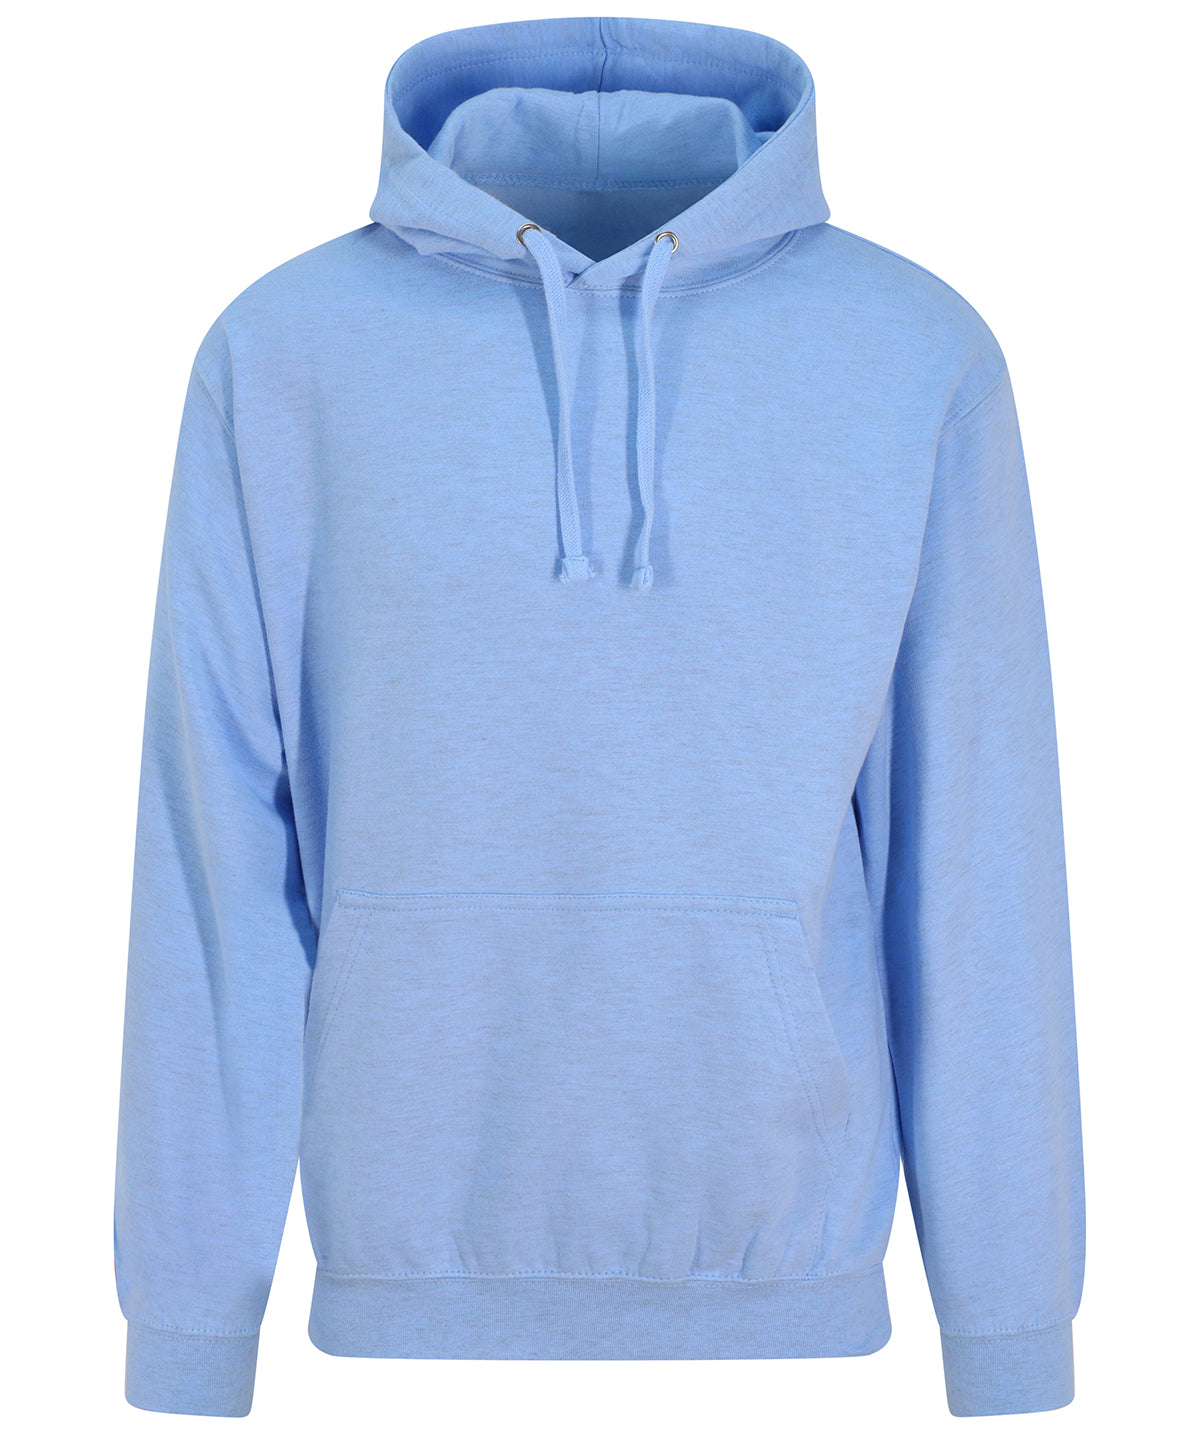 Personalised Hoodies - Turquoise AWDis Just Hoods Surf hoodie